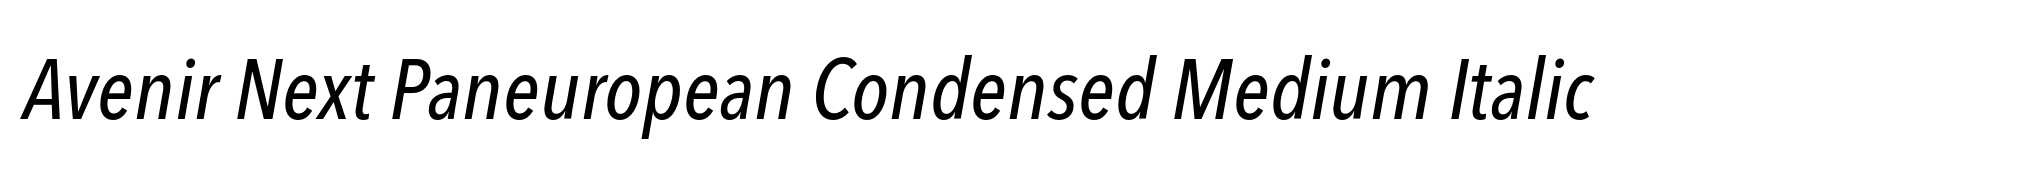 Avenir Next Paneuropean Condensed Medium Italic image